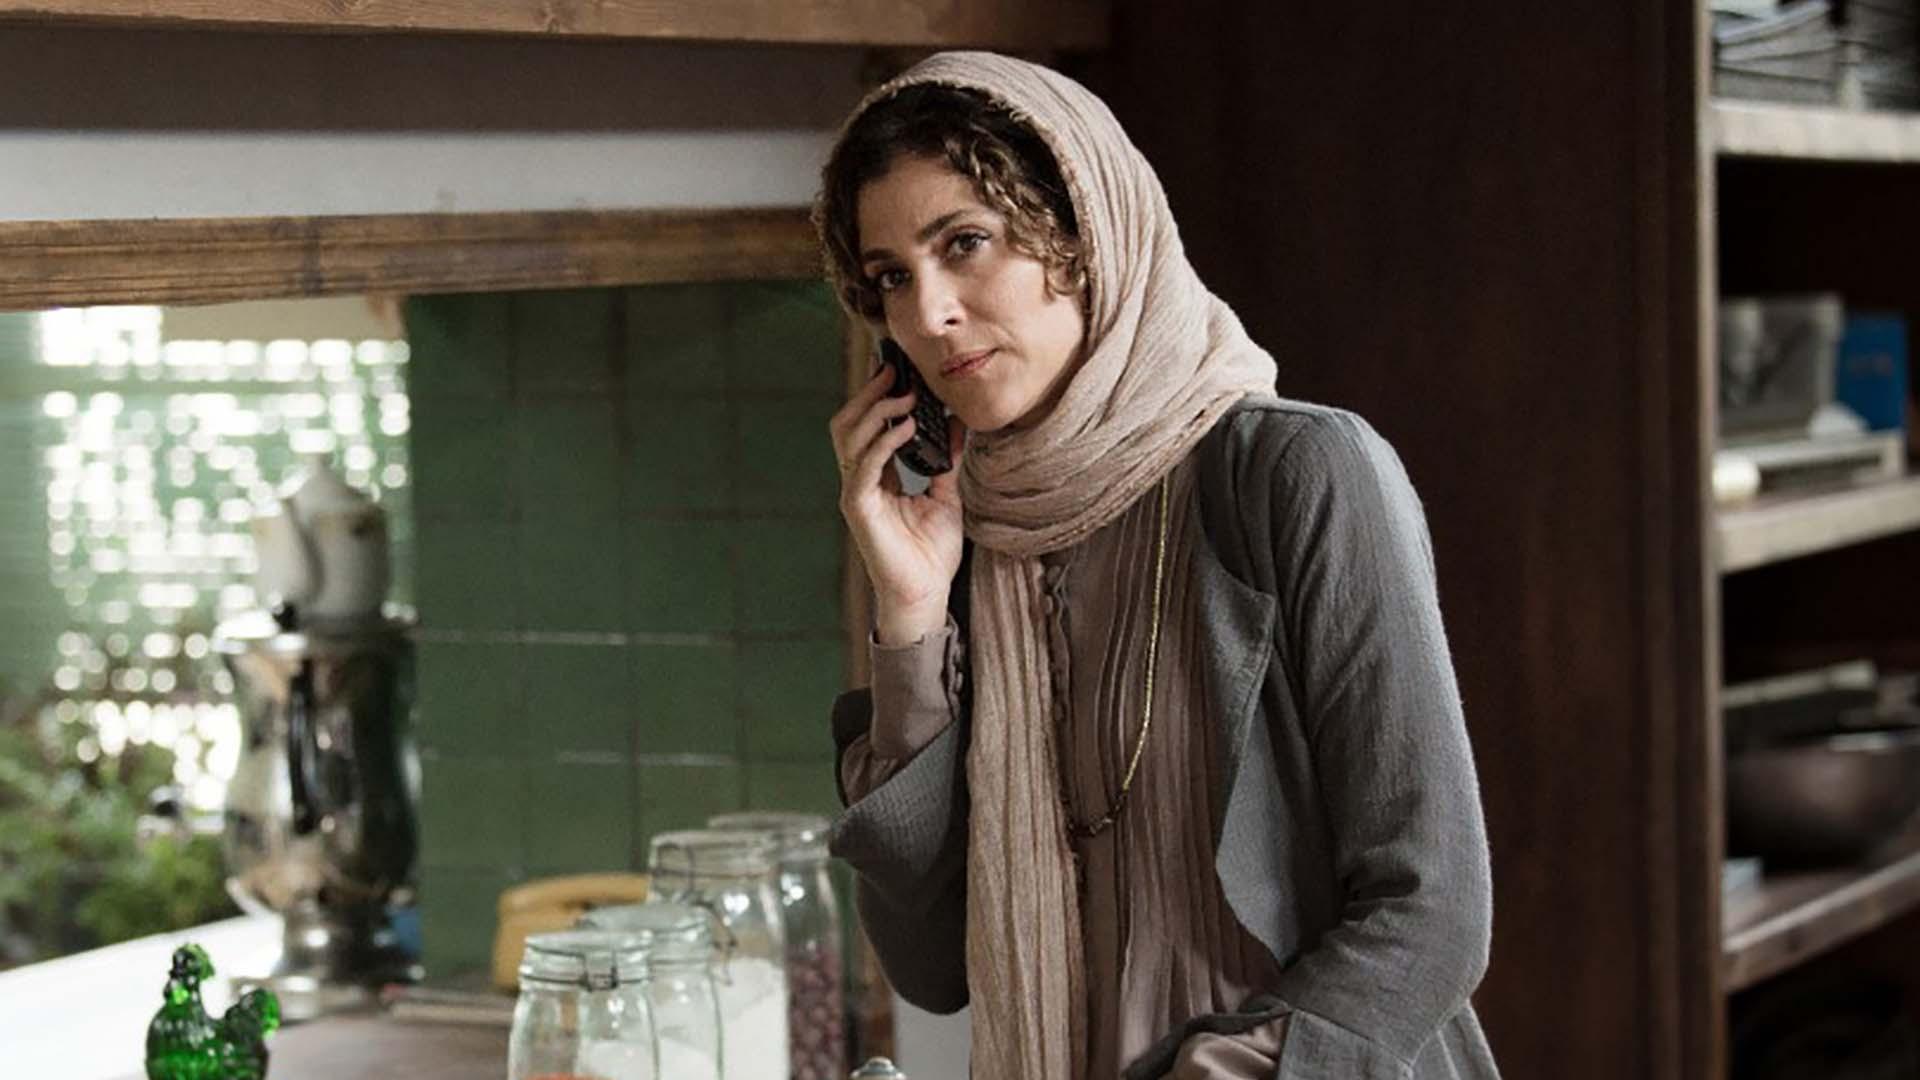 ویشکا آسایش در نمایی از فیلم گورکن در حال صحبت با تلفن